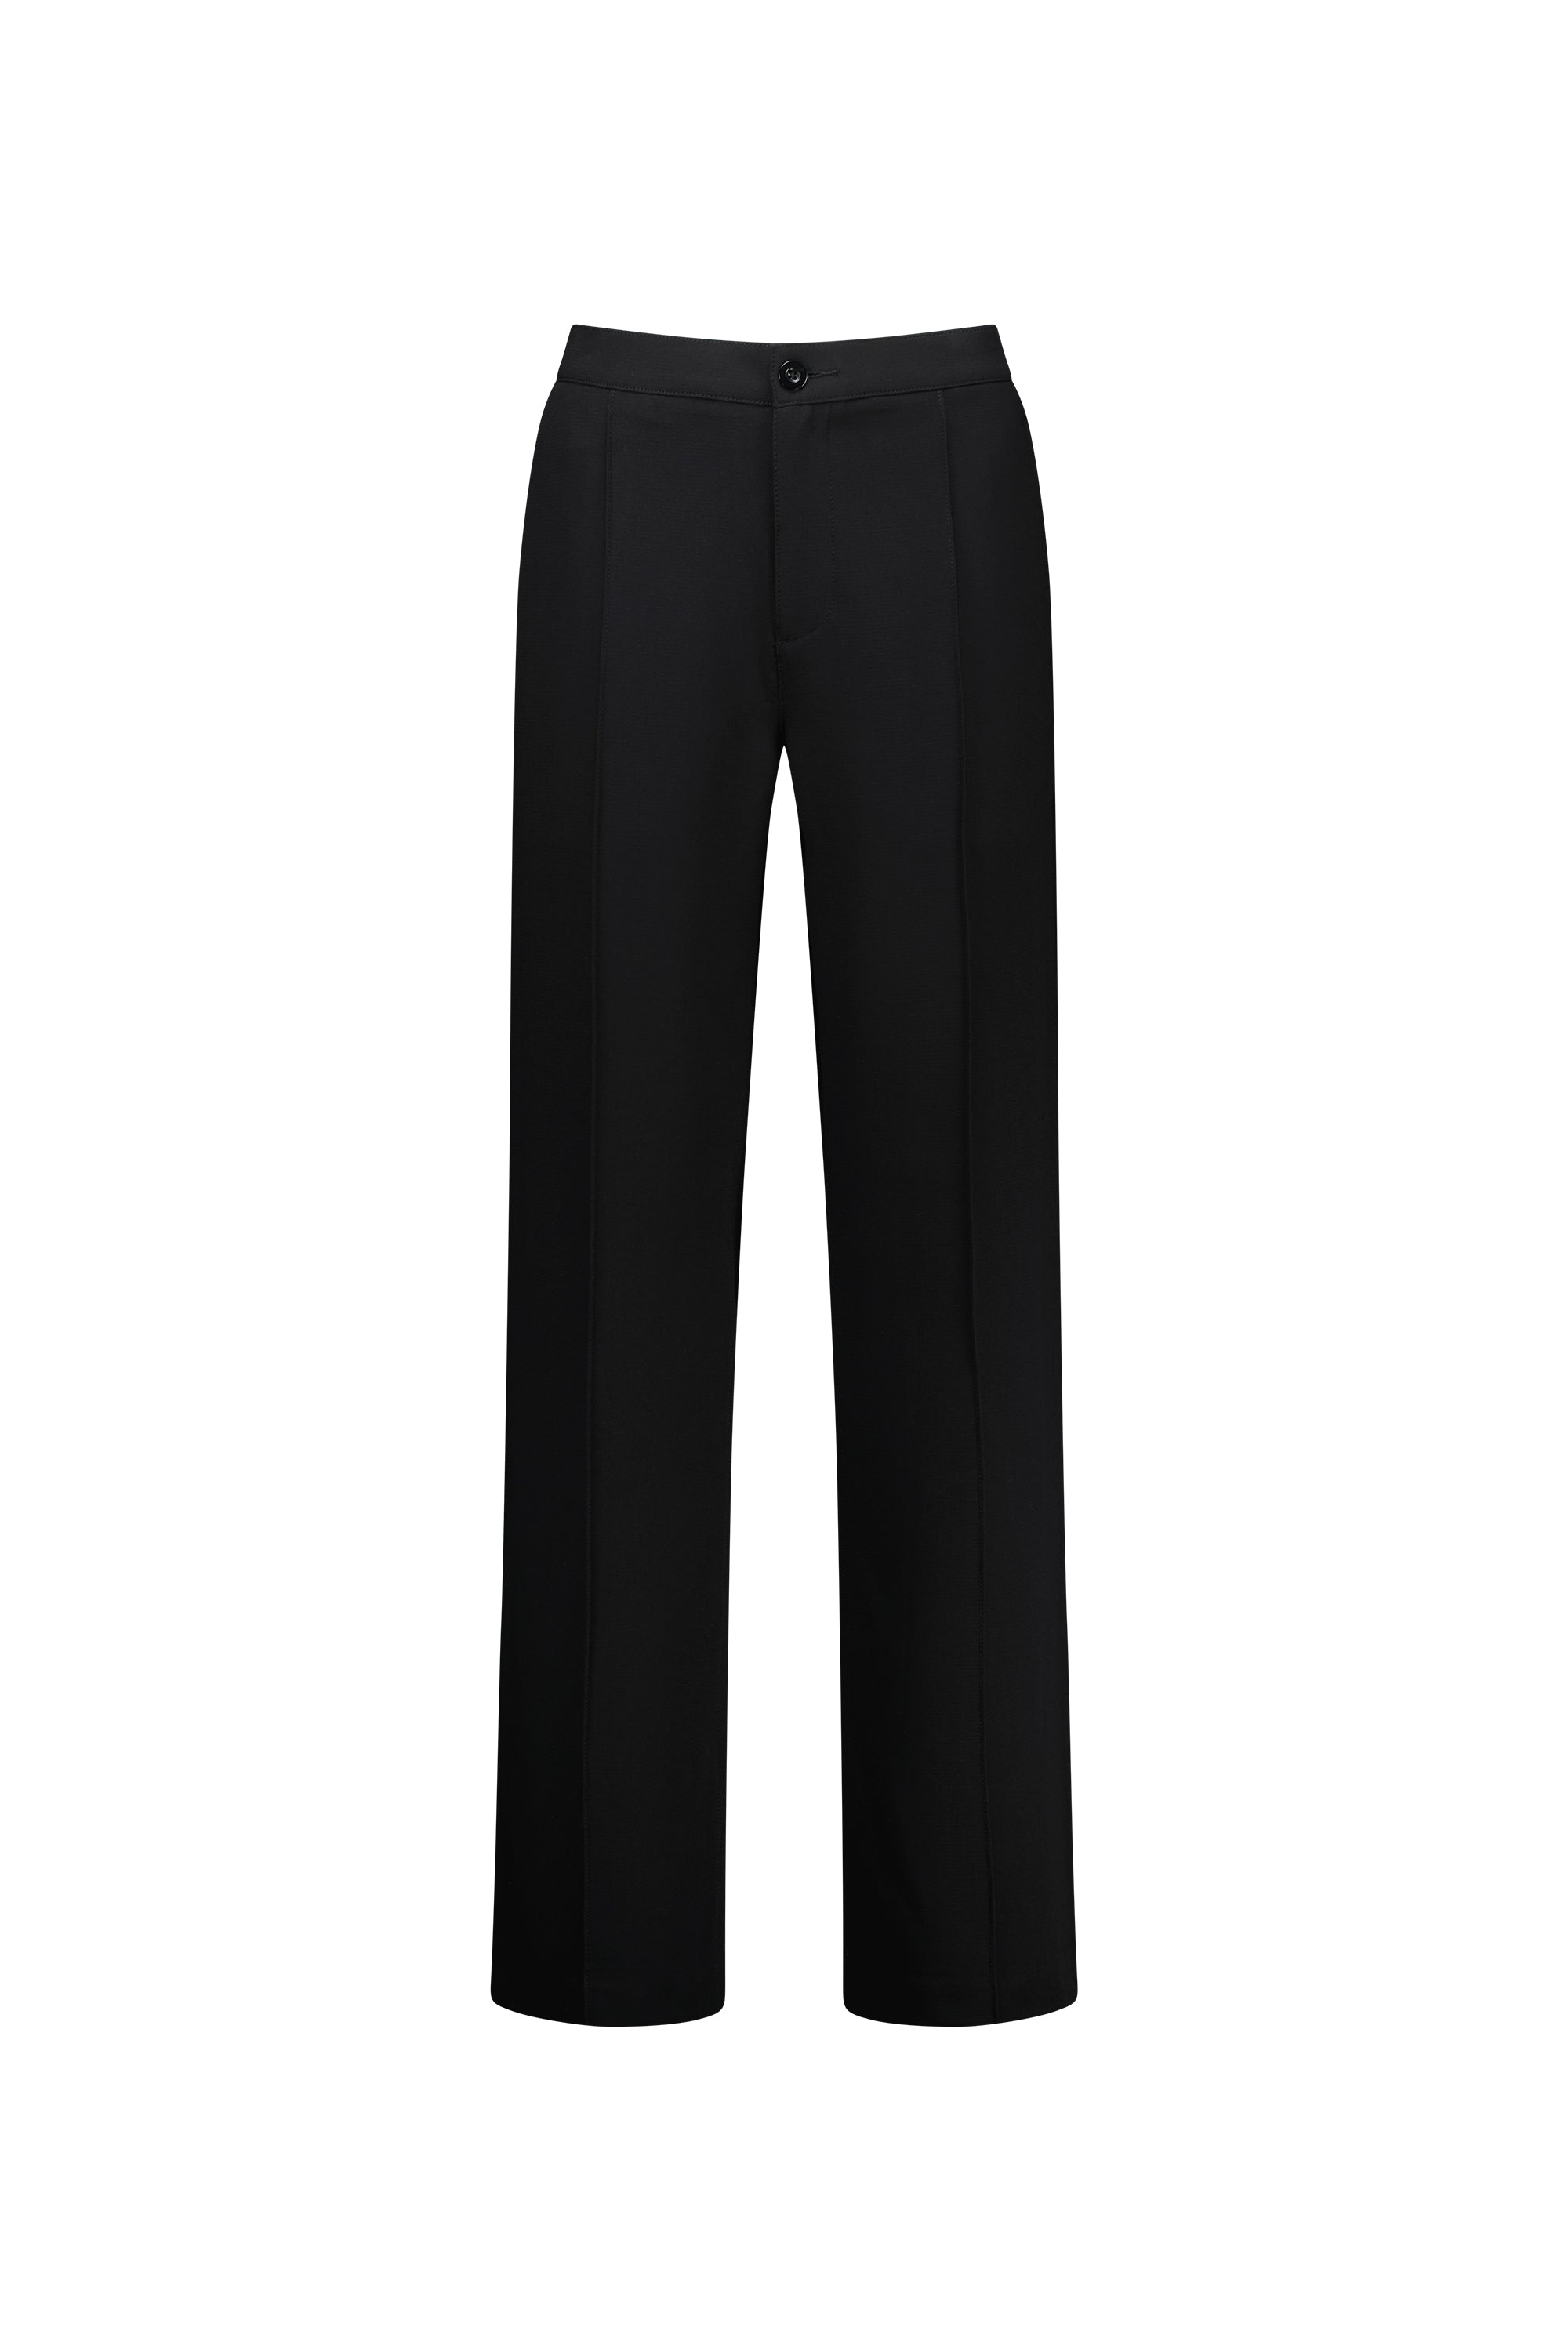 Vassalli Wide Leg Full Length Dress Pant - Black